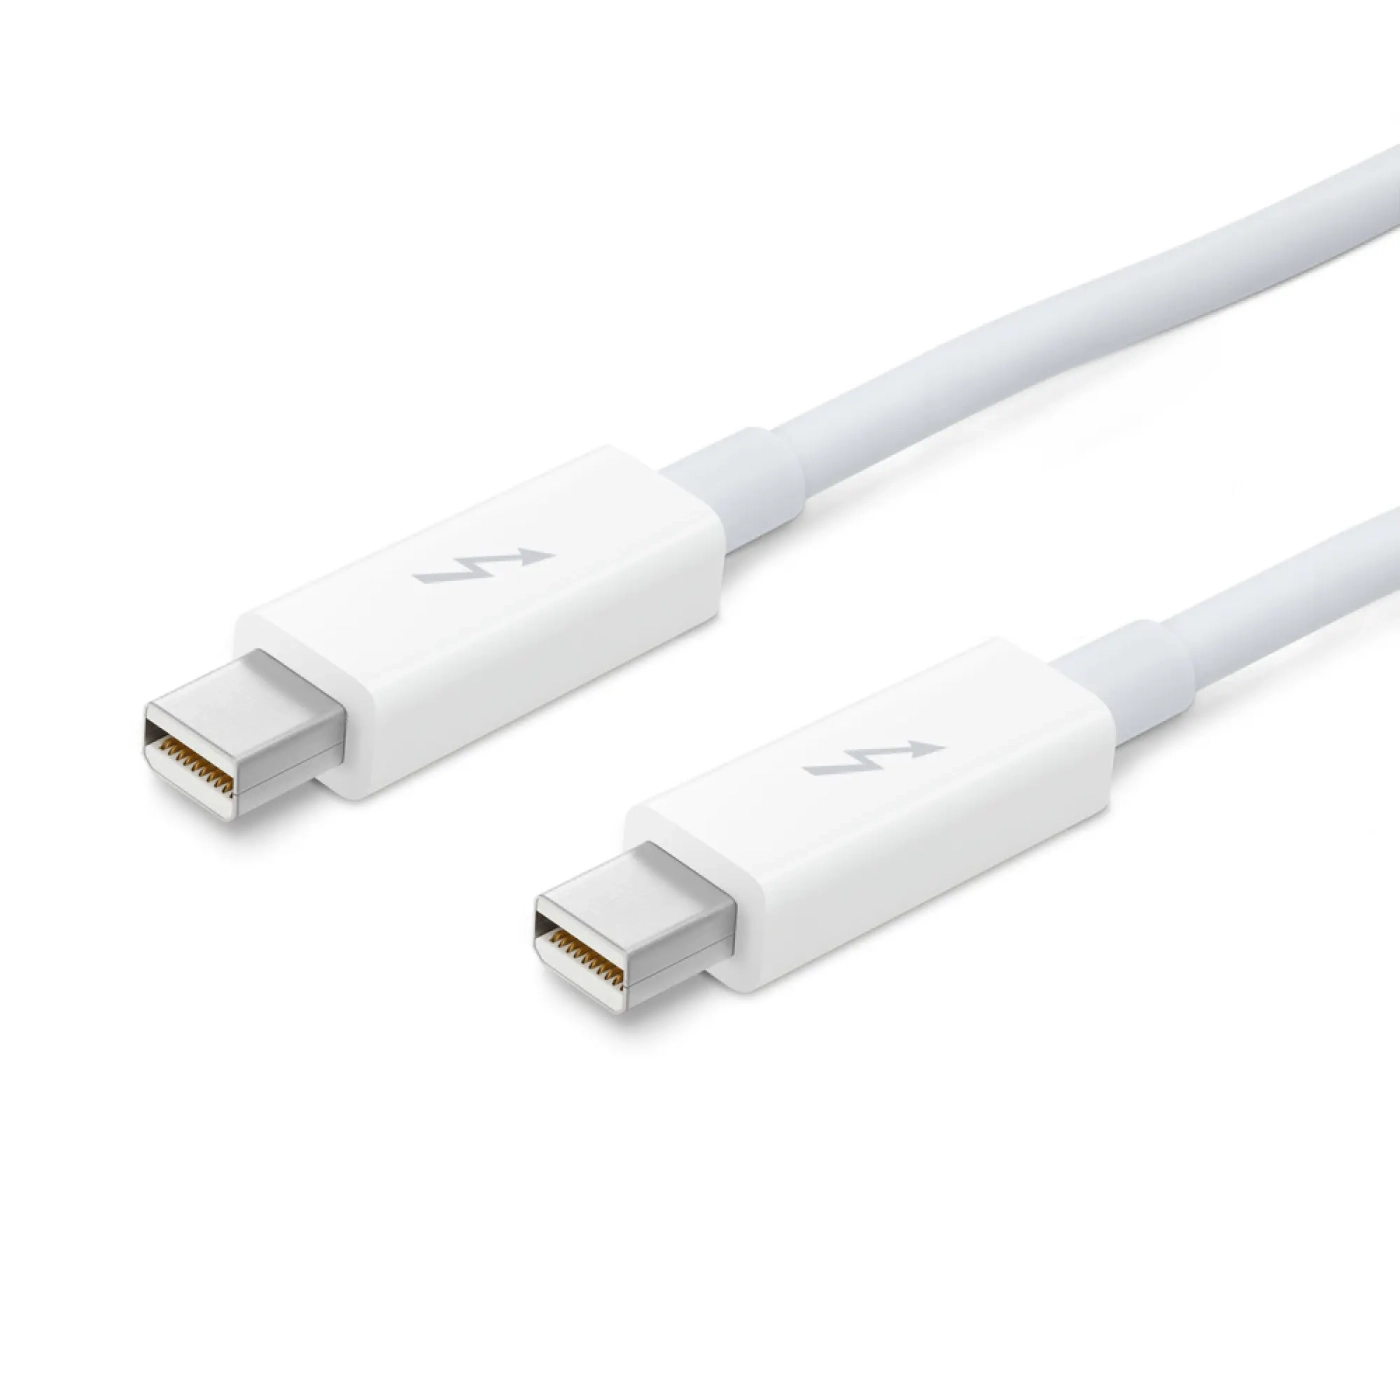 Купить Дата кабель Apple Thunderbolt (MD861ZM/A) - фото 2